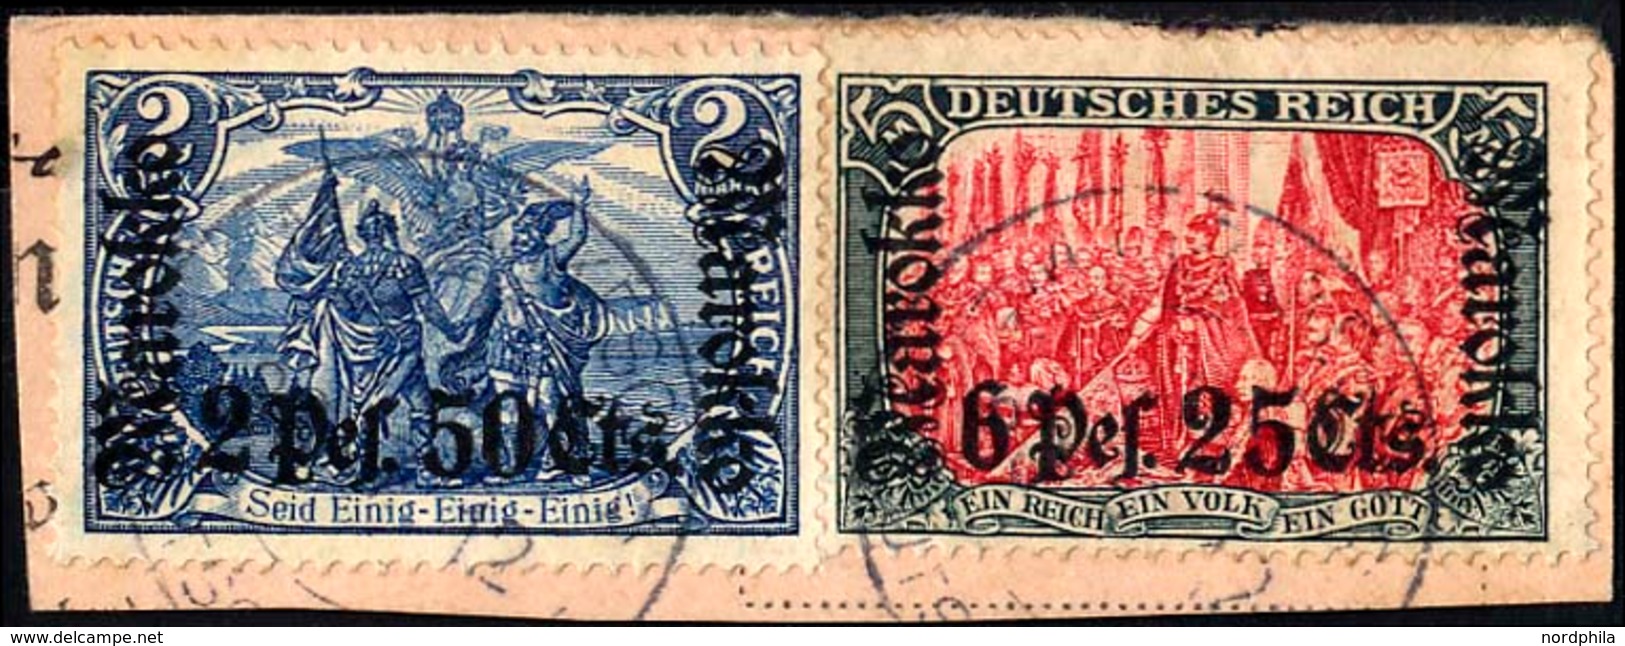 DP IN MAROKKO 56,58IA BrfStk, 1911, 2 P. 50 C. Auf 2 M. Und 6 P. 25 C. Auf 5 M. Auf Postabschnitt Mit Stempel MARRAKESCH - Maroc (bureaux)